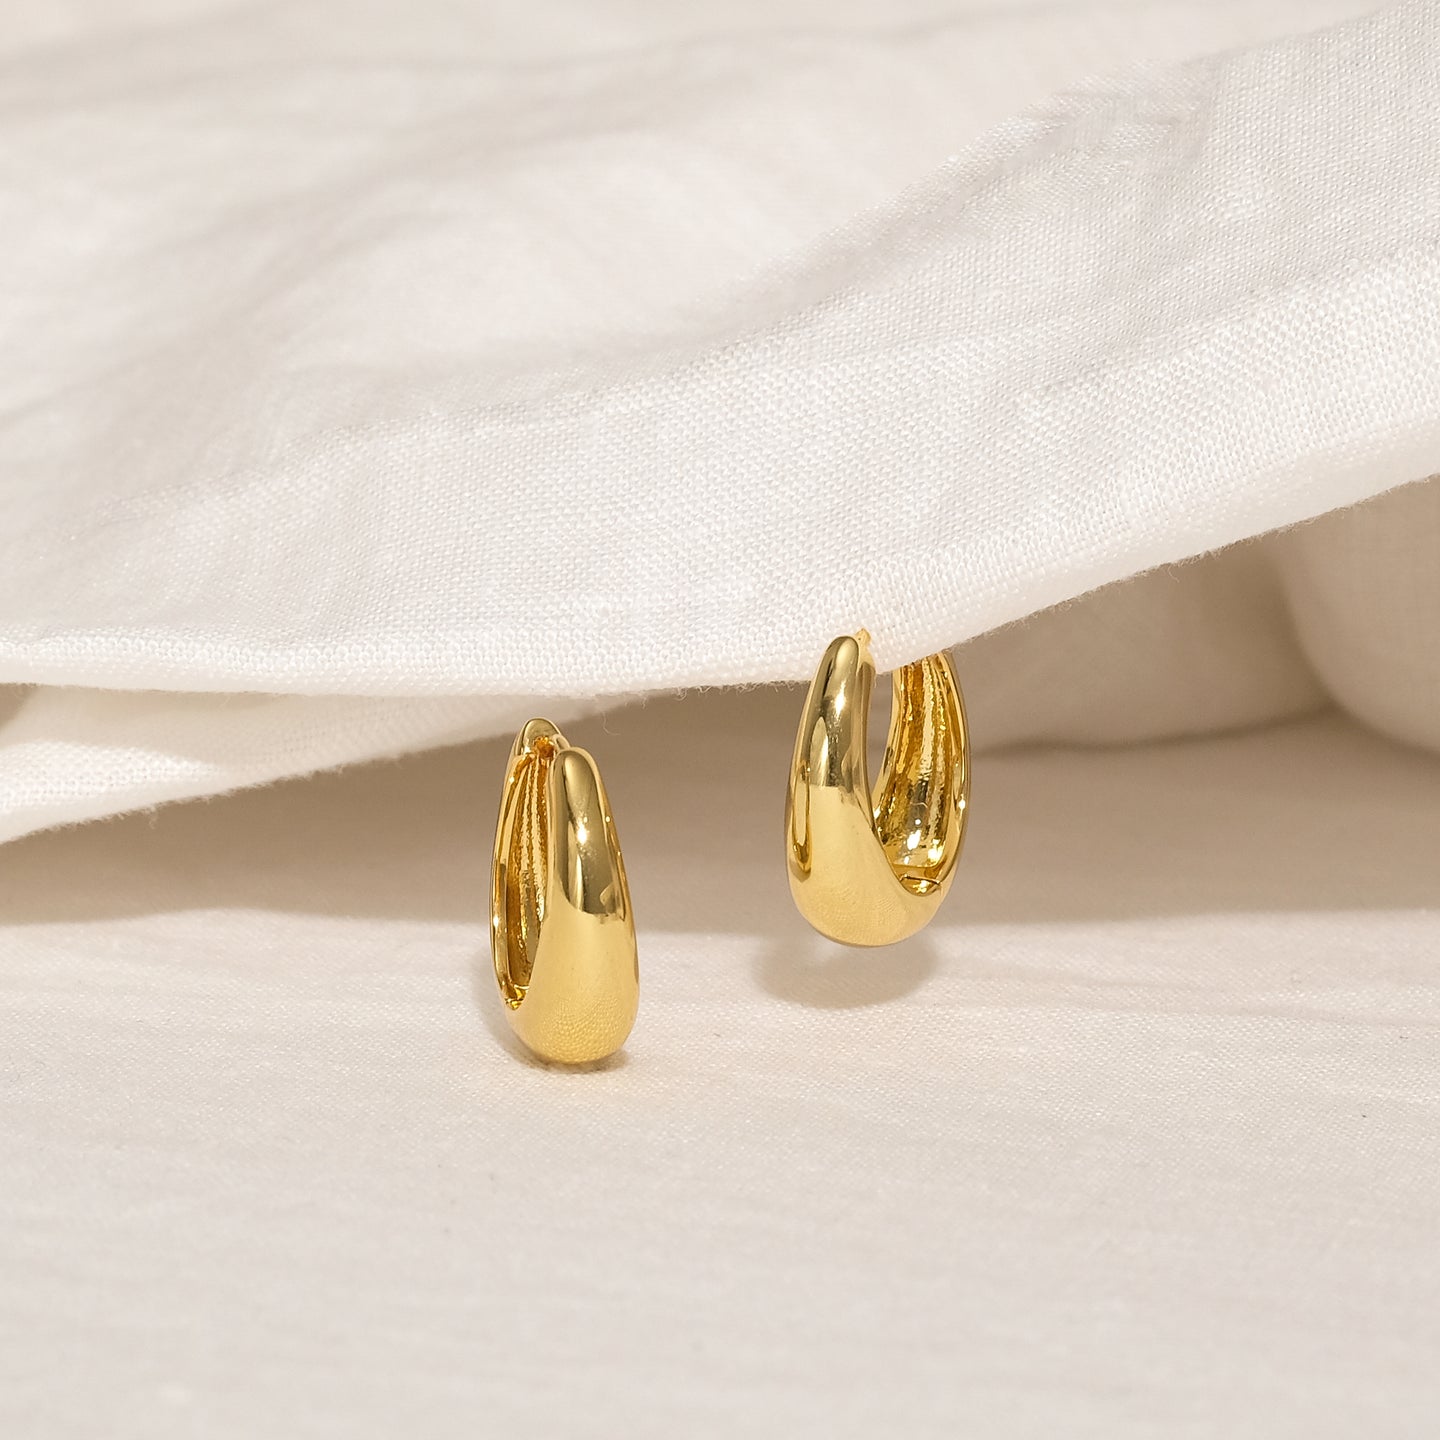 Seek Shine Les Tiny Hoop Earrings (18K Gold Brass)